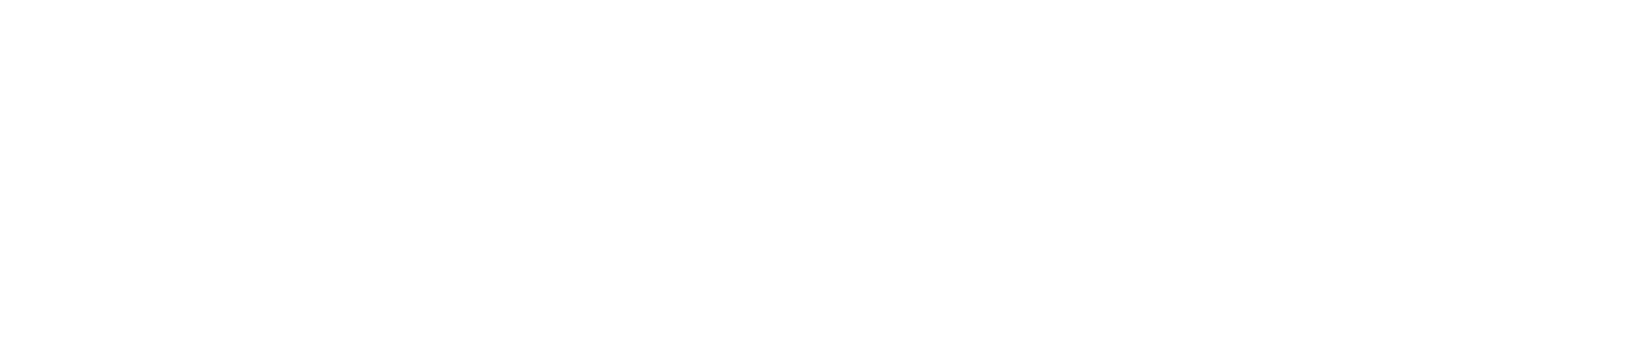 bolha.com logotip